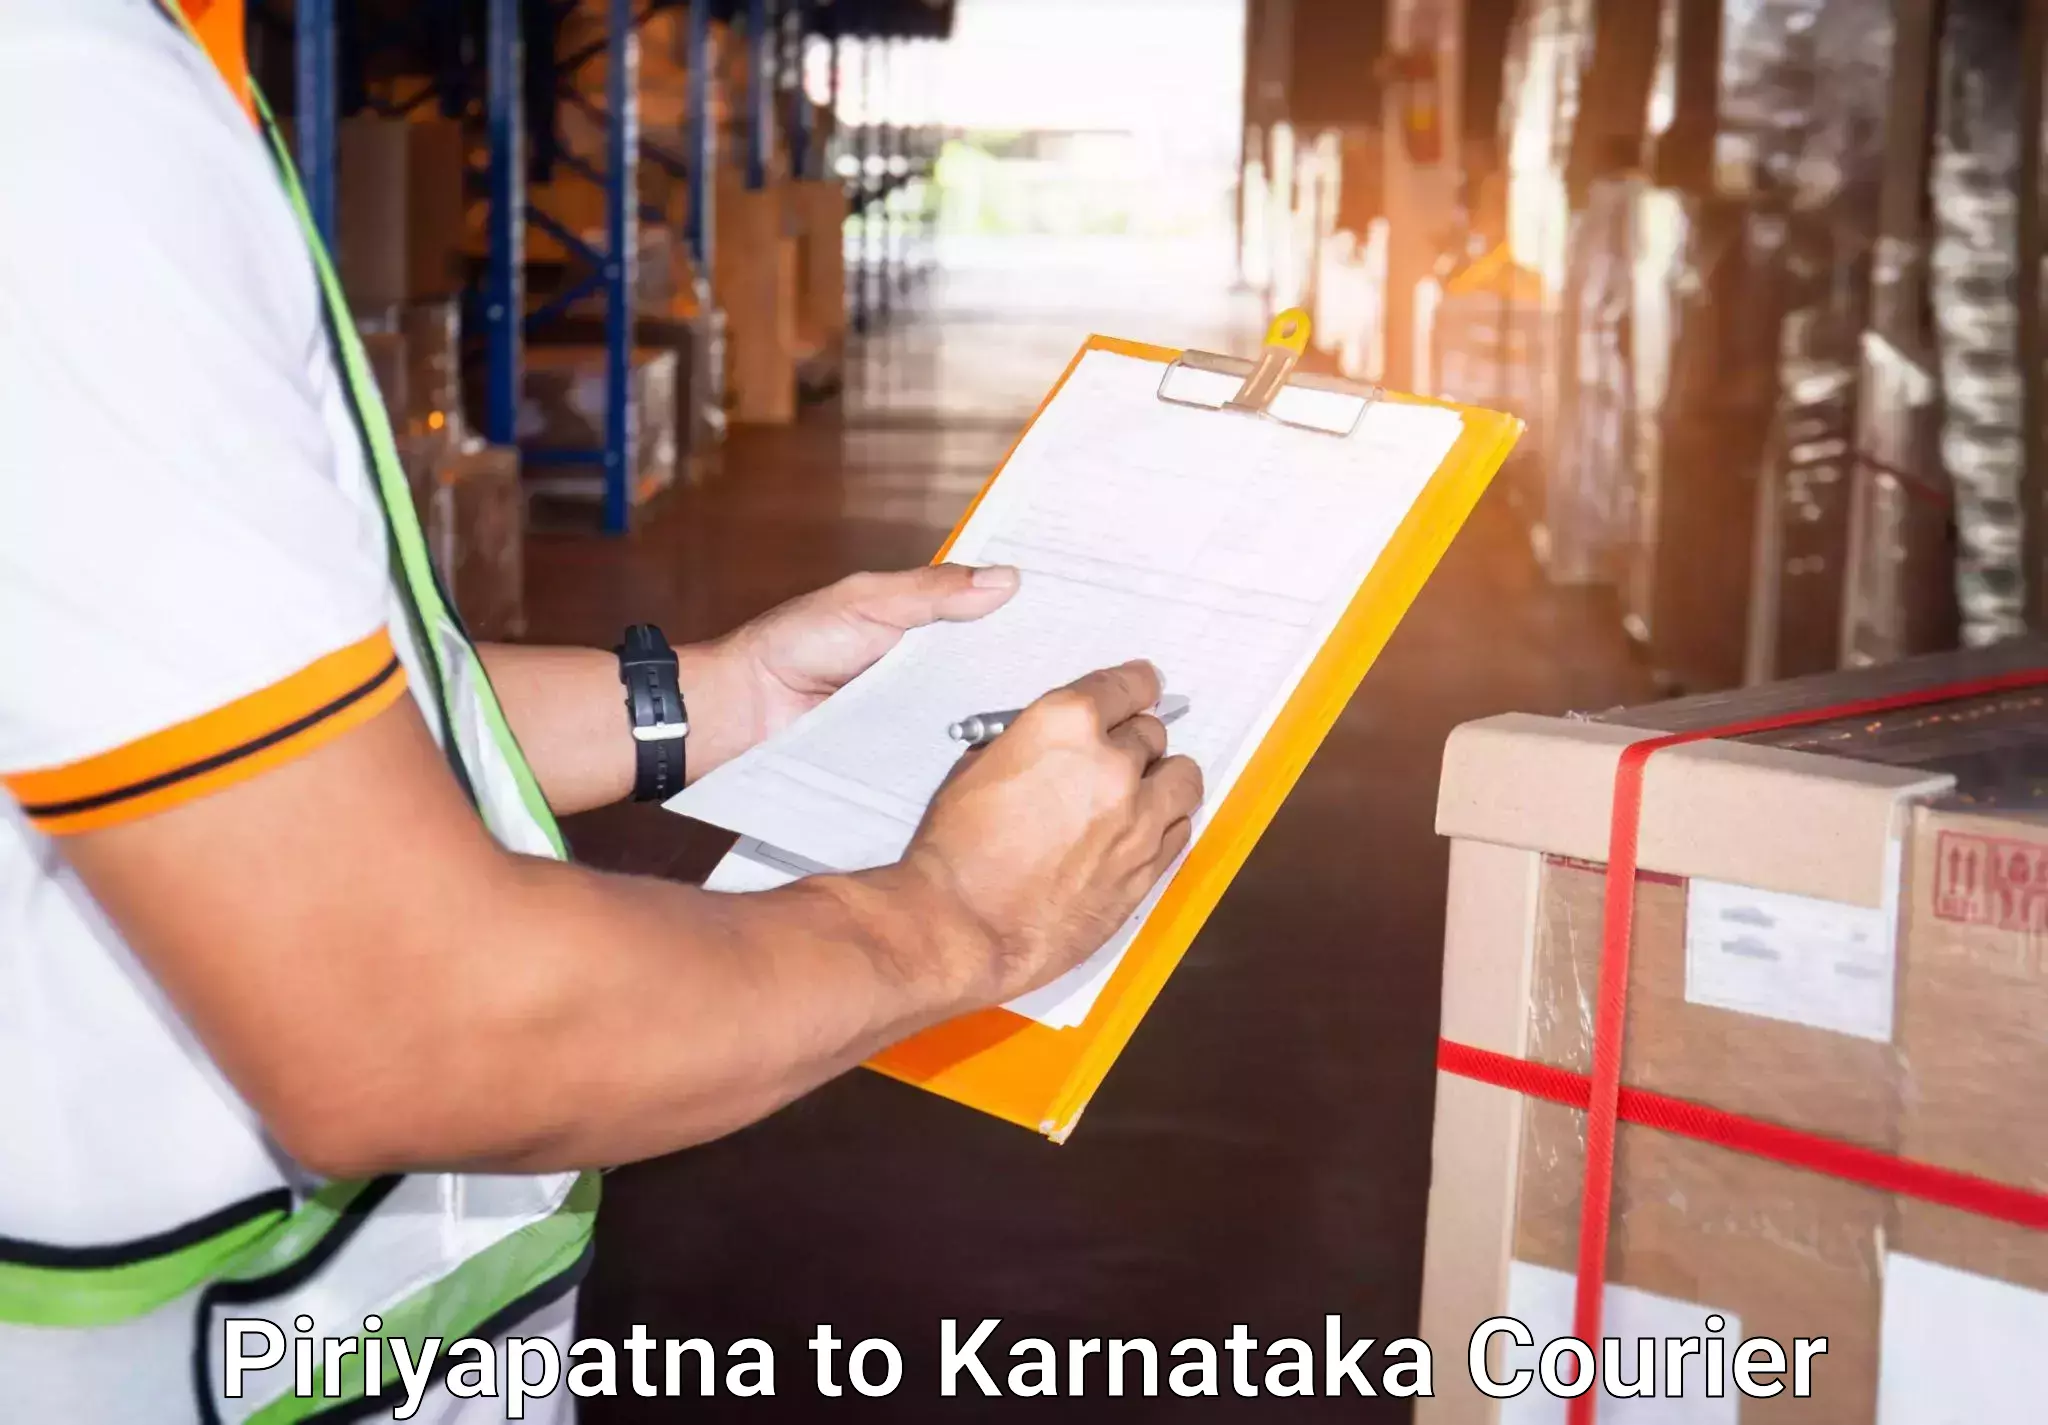 High-quality baggage shipment Piriyapatna to Kanjarakatte